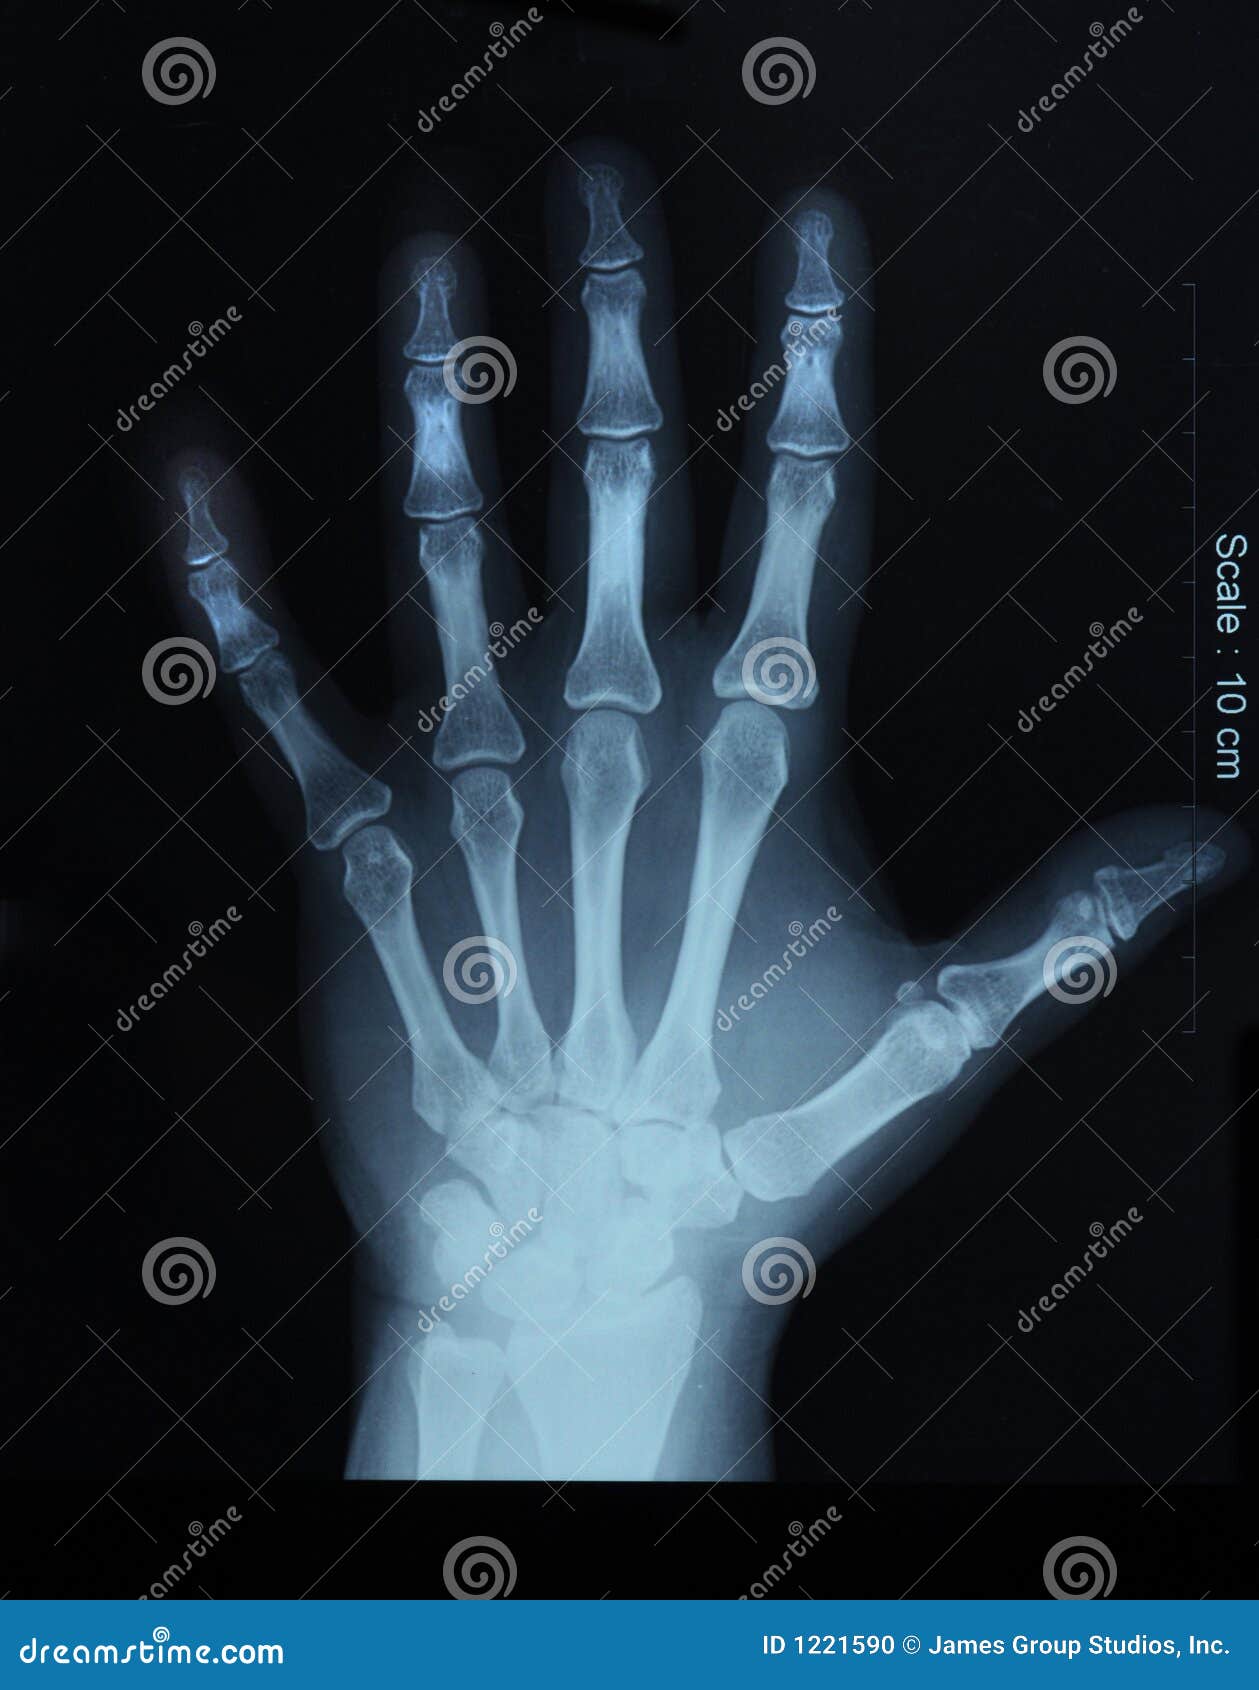 Остеопороз кистей рук рентген